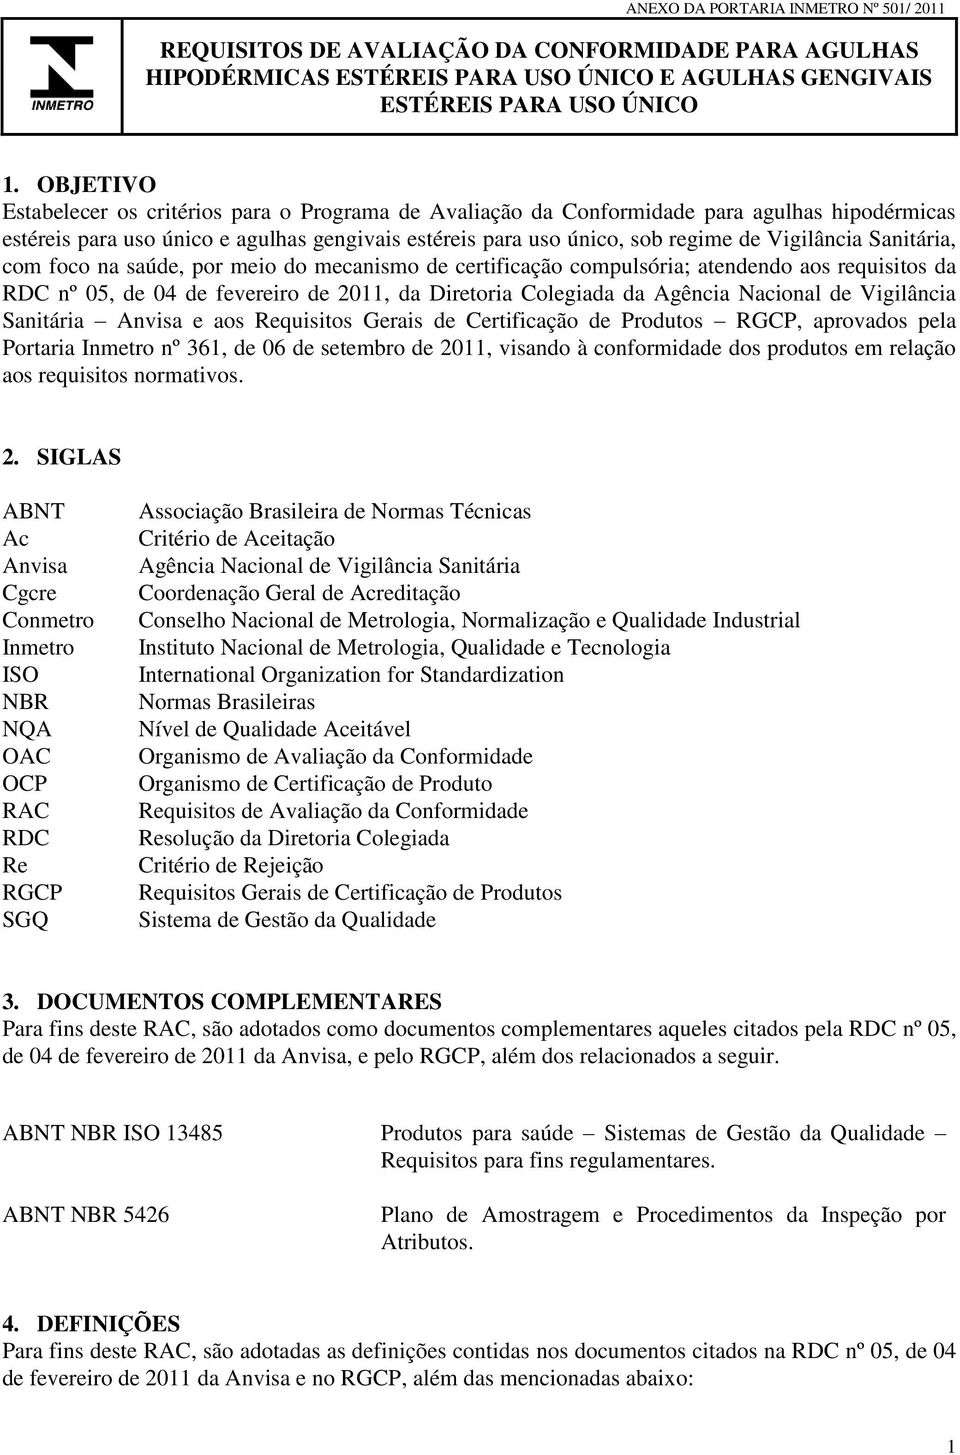 Sanitária, com foco na saúde, por meio do mecanismo de certificação compulsória; atendendo aos requisitos da RDC nº 05, de 04 de fevereiro de 2011, da Diretoria Colegiada da Agência Nacional de